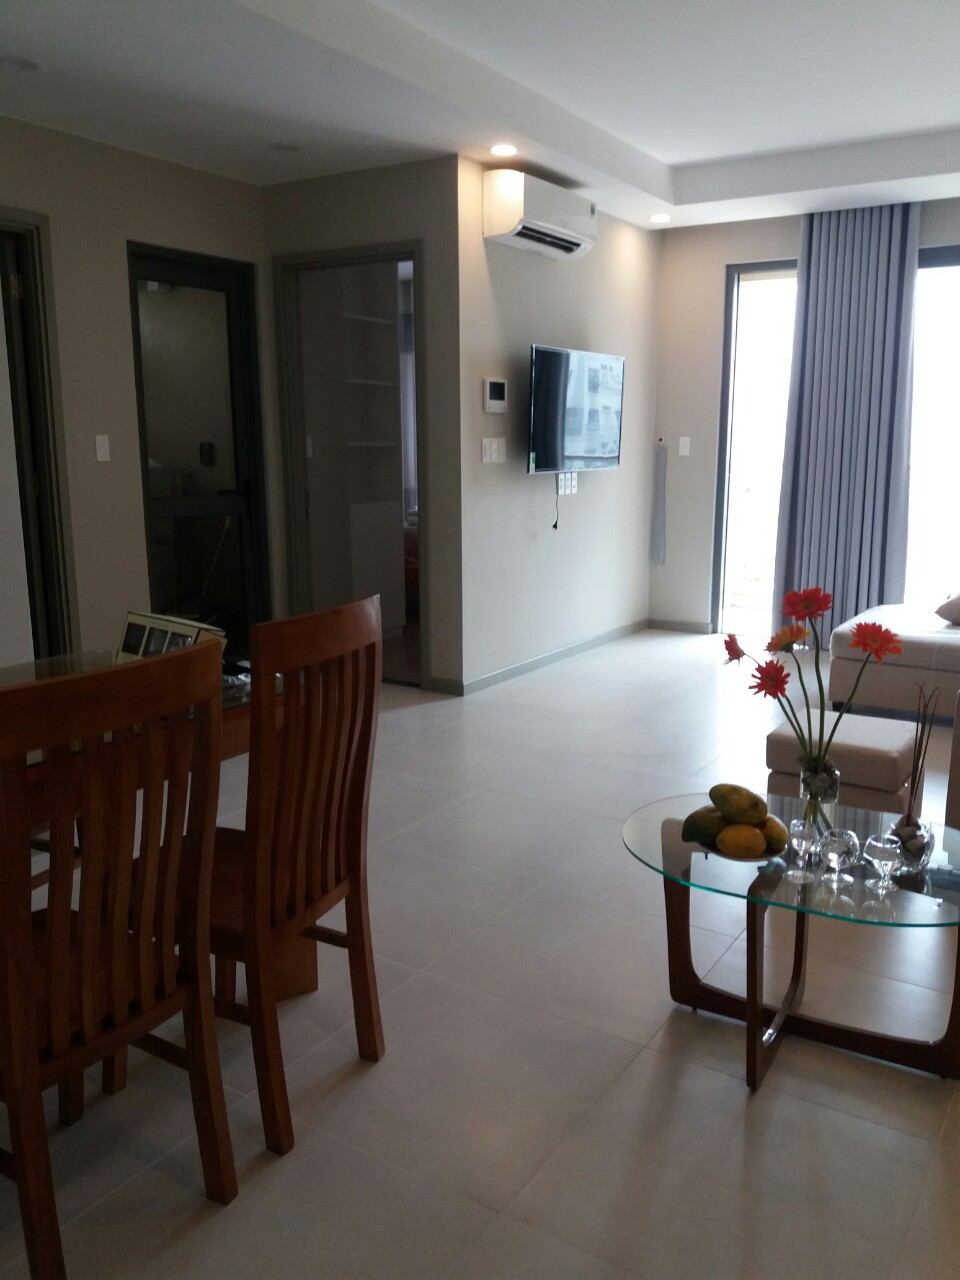 Cho thuê căn hộ cao cấp Gold View, 2 phòng ngủ, 80m2, nội thất cao cấp, giá 1000$/ tháng